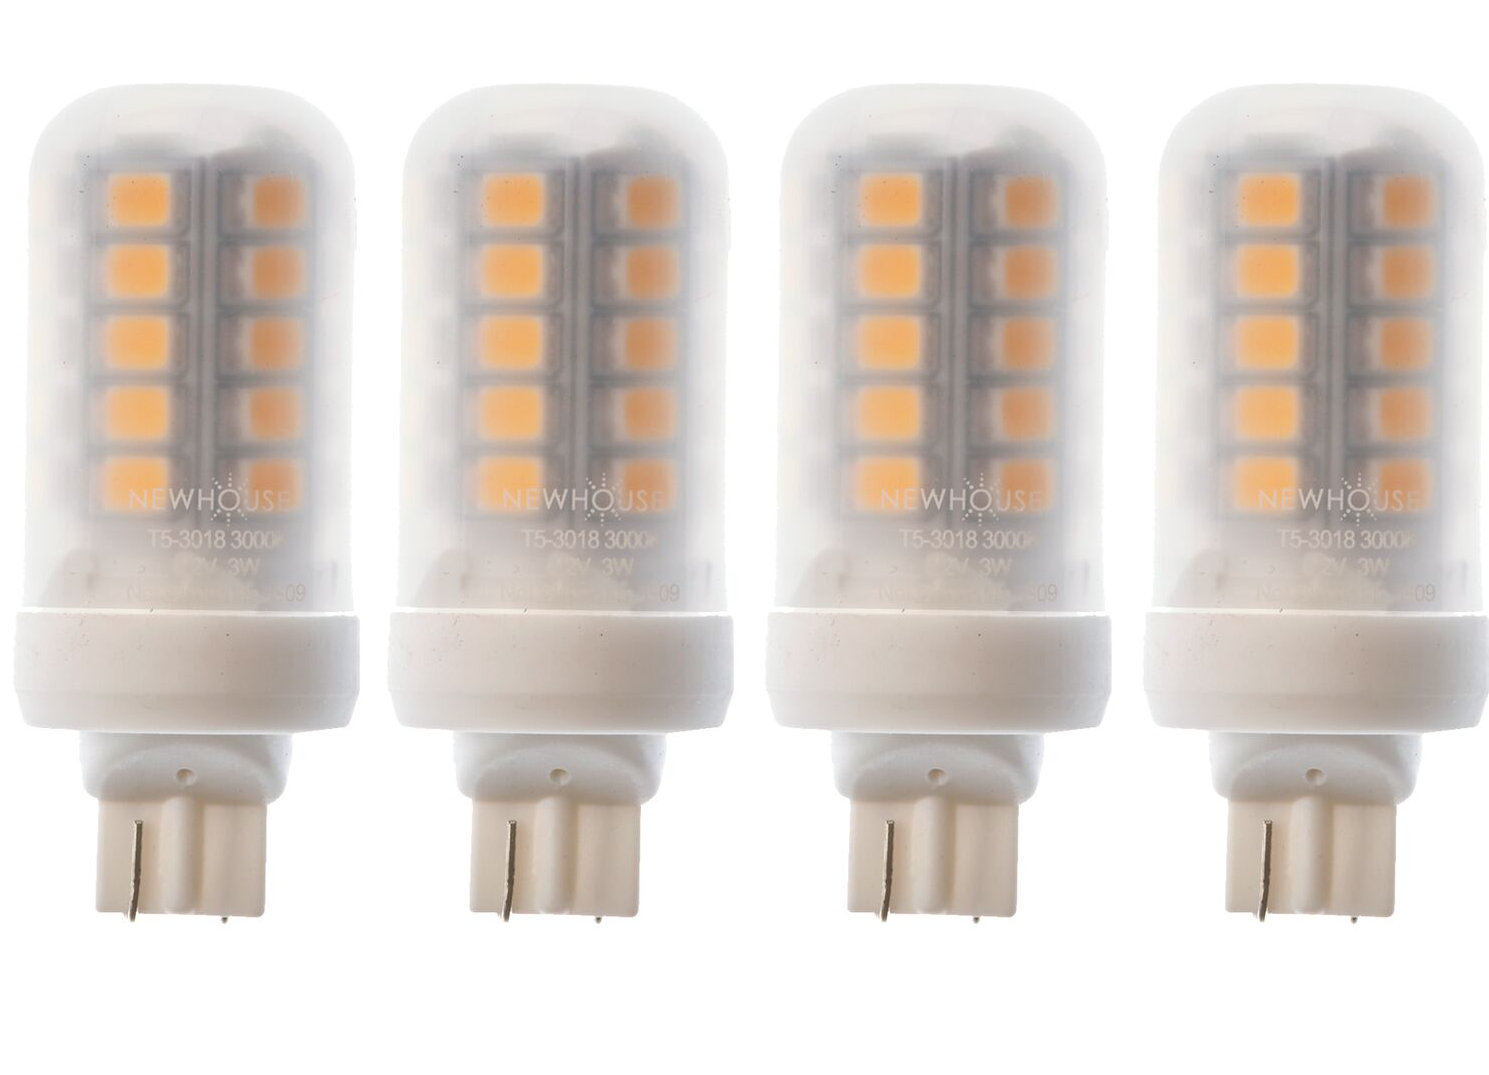 Soft White IIDEE G4 LED Bulb 2W Warm White 3000K 6 Pack for Home Lighting/Ceiling Light/Desk Lamp/Chandelier 